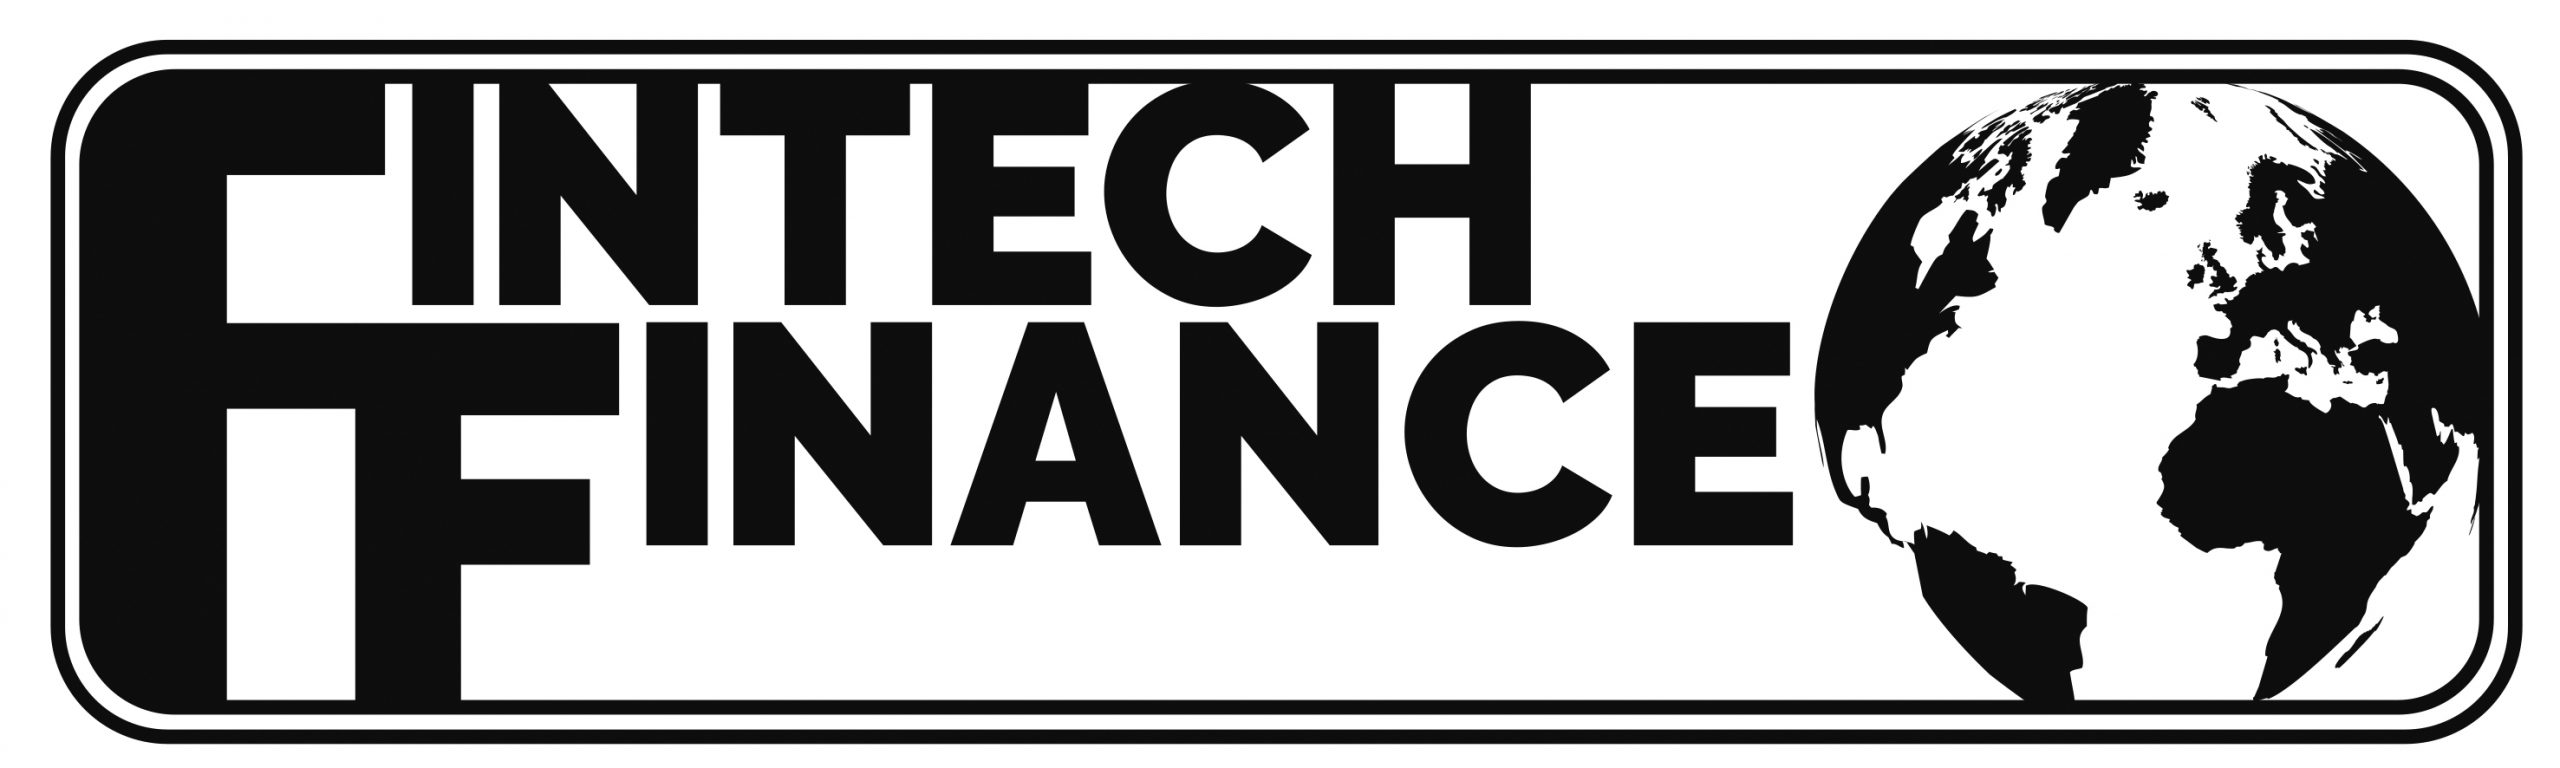 FinTech_Finance_LogoFinal_Black